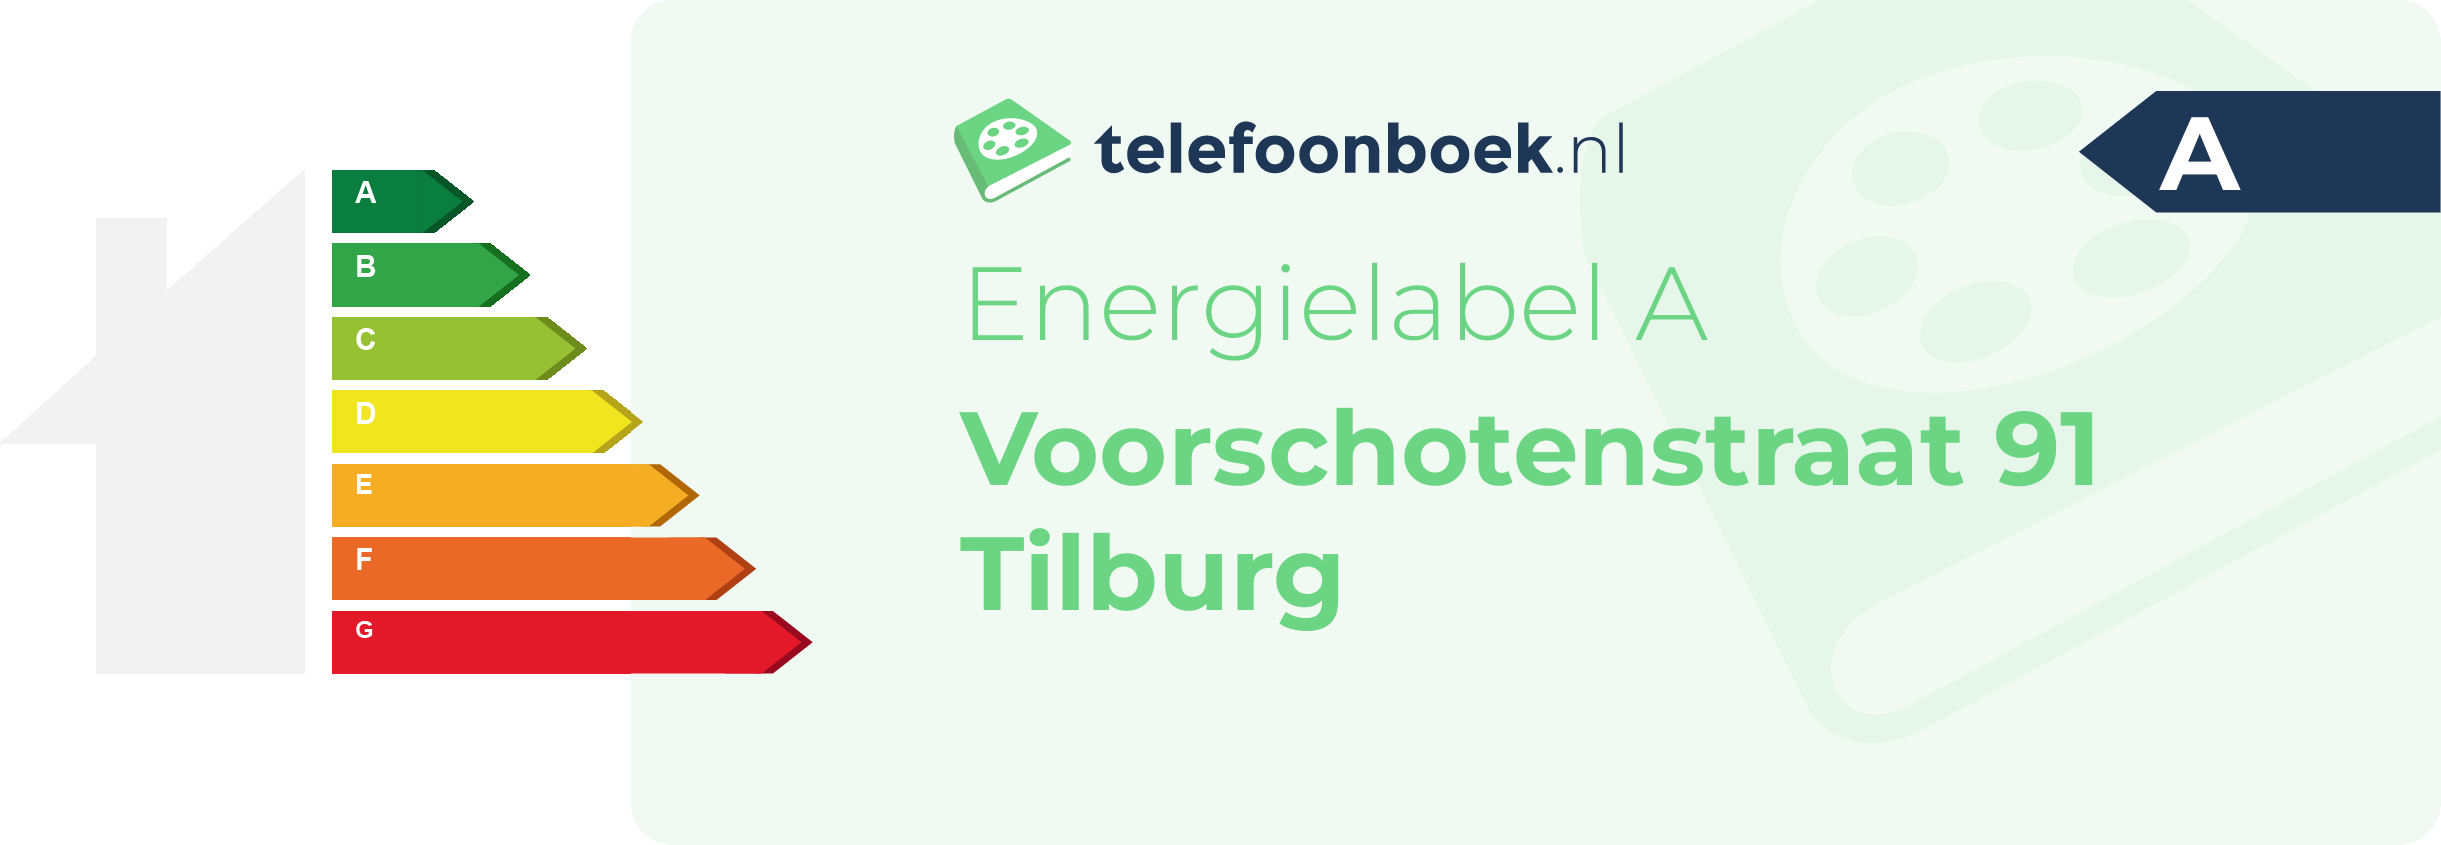 Energielabel Voorschotenstraat 91 Tilburg